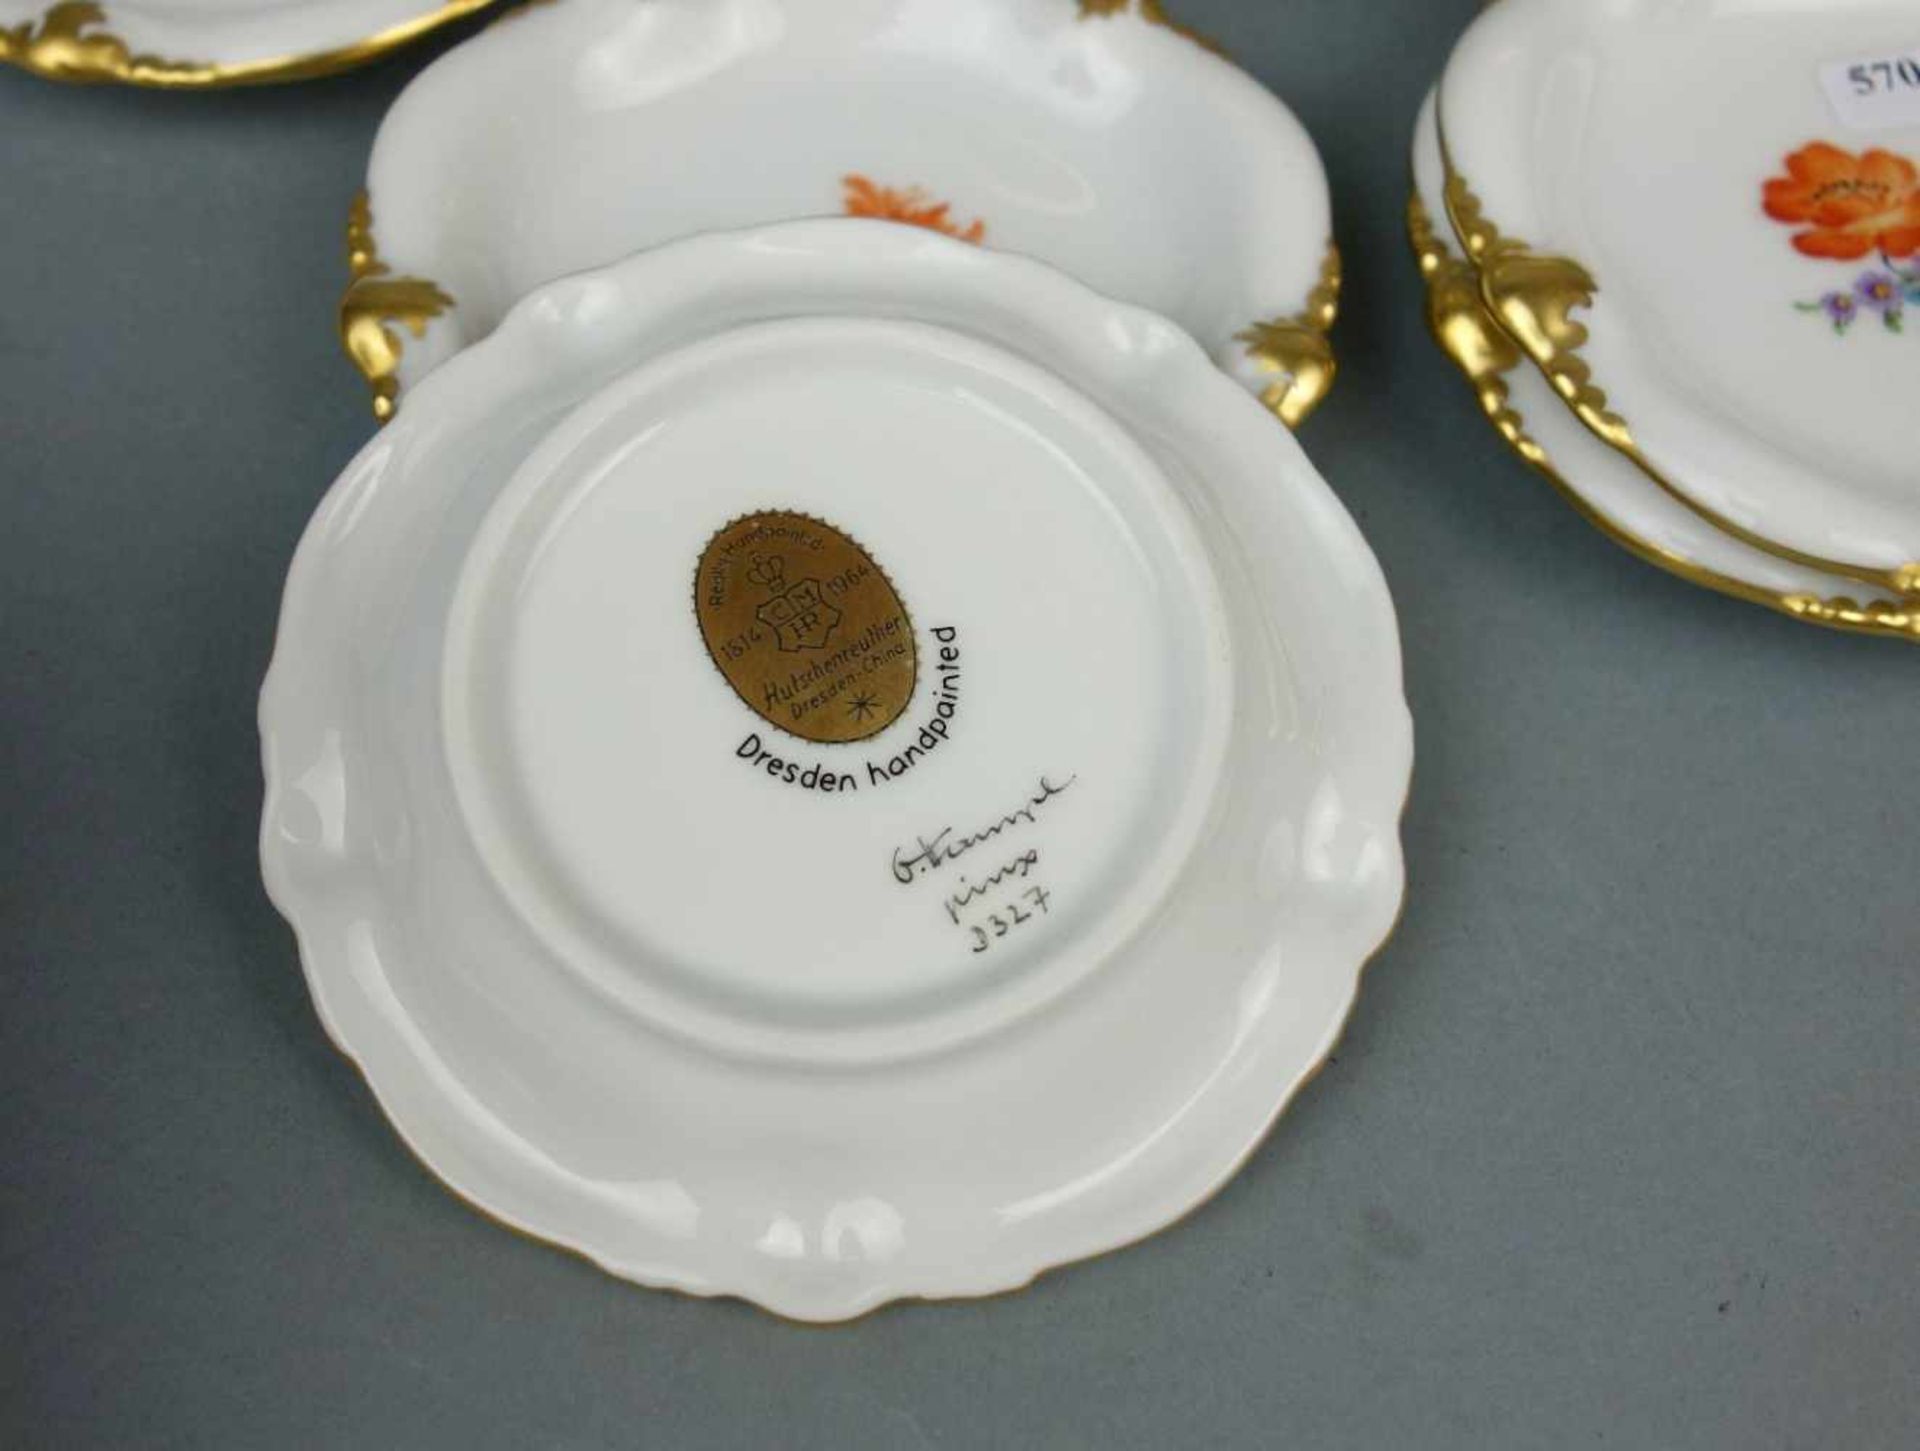 SCHALE UND 6 KONFEKTTELLER / bowl and plates, Porzellan Manufaktur C. M. Hutschenreuther - - Image 3 of 3